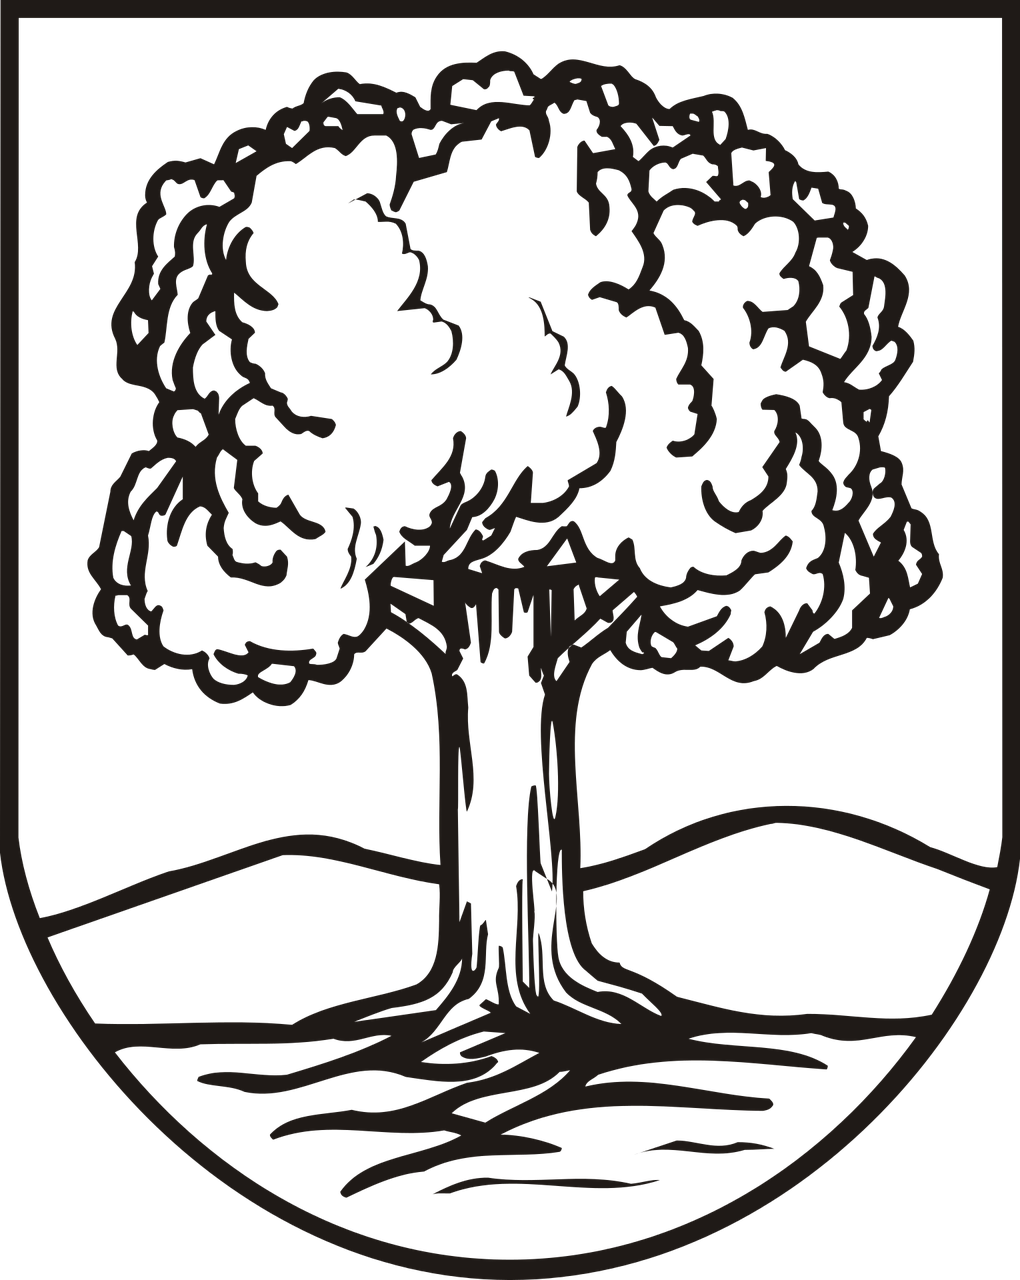 coat of arms wałbrzych poland free photo